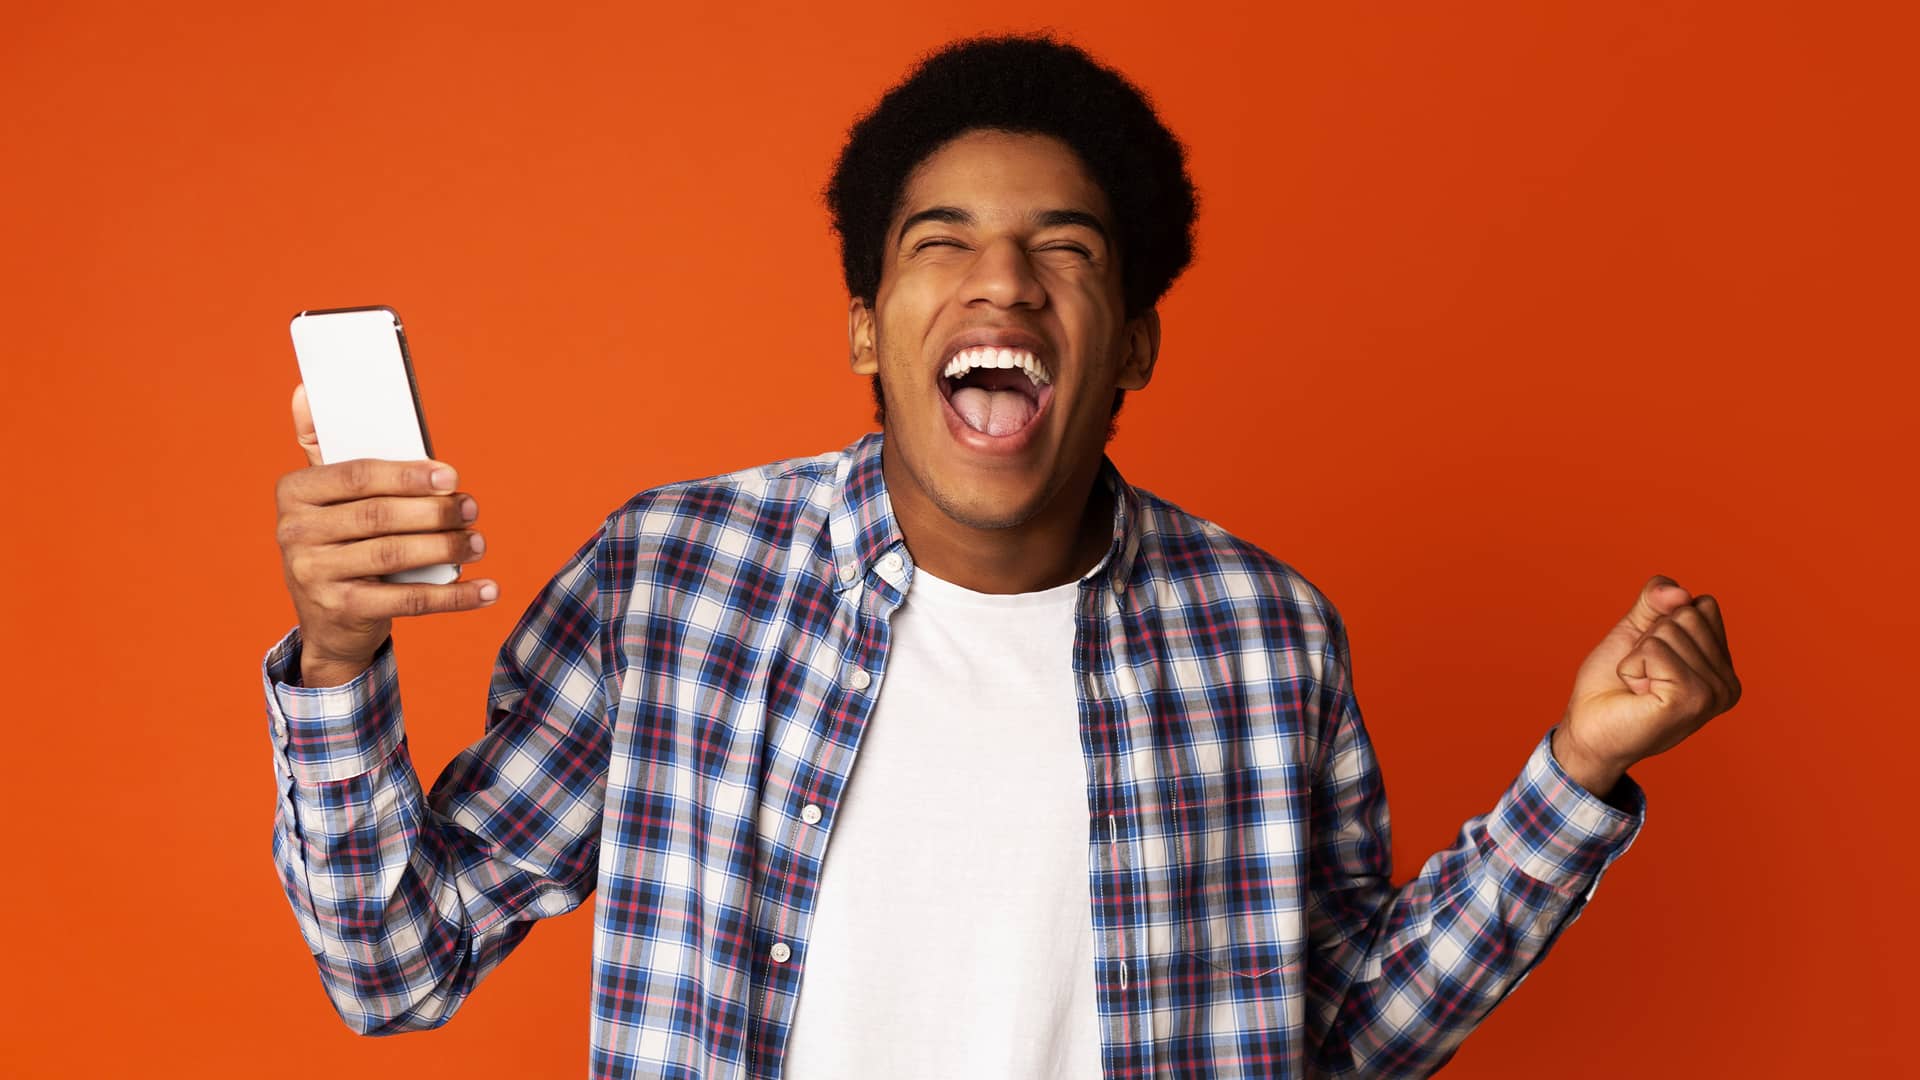 Adolescente feliz porque ha recargado su móvil simboliza prepago recarga de orange